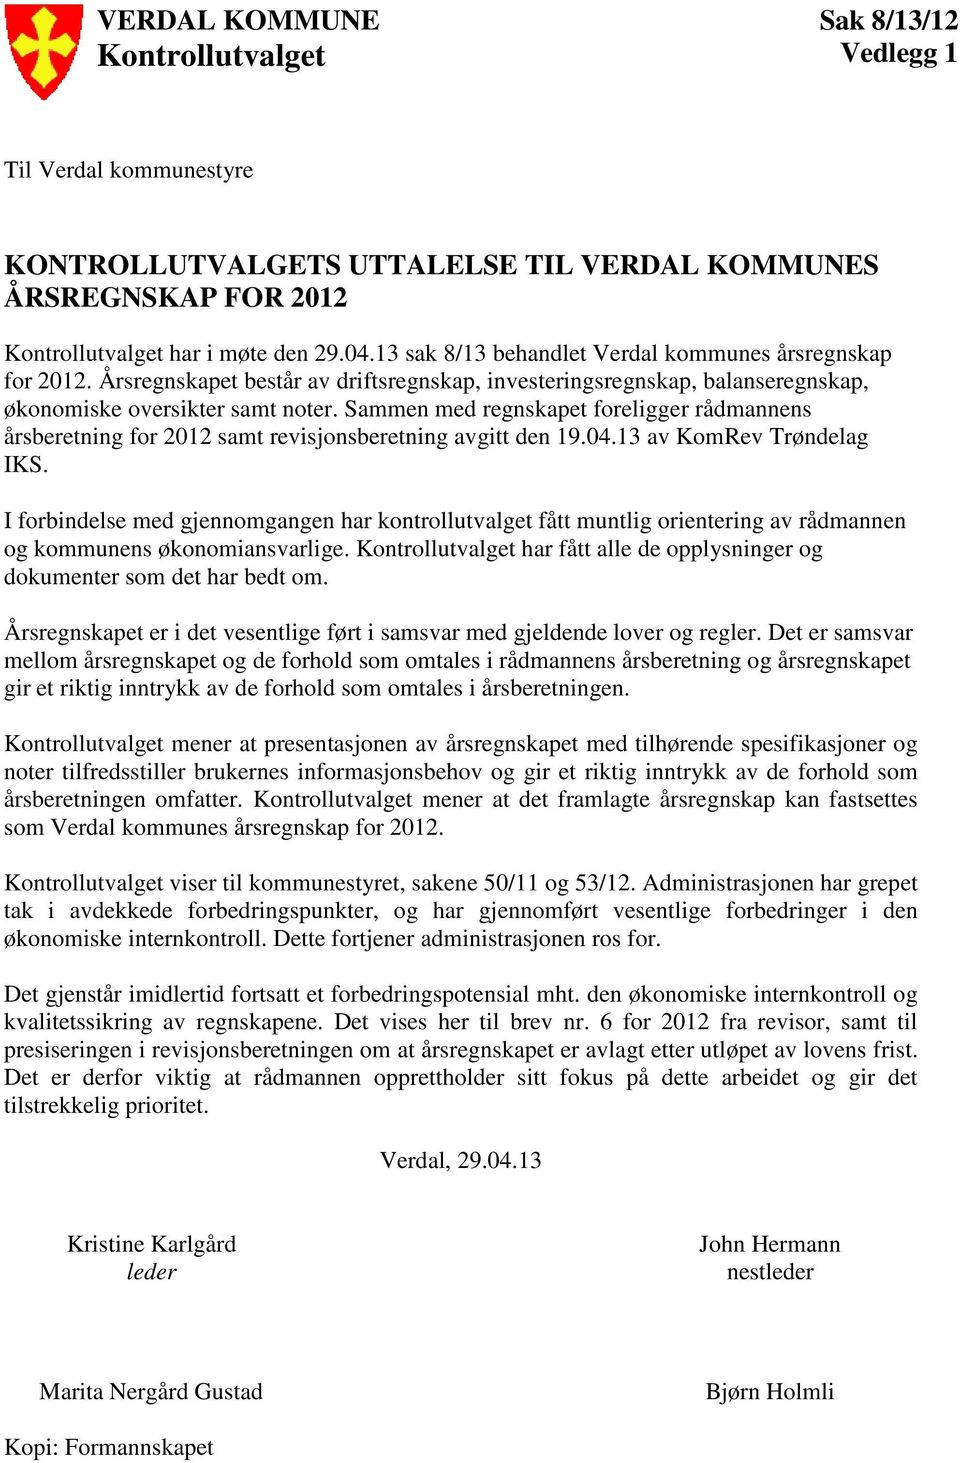 Sammen med regnskapet foreligger rådmannens årsberetning for 2012 samt revisjonsberetning avgitt den 19.04.13 av KomRev Trøndelag IKS.